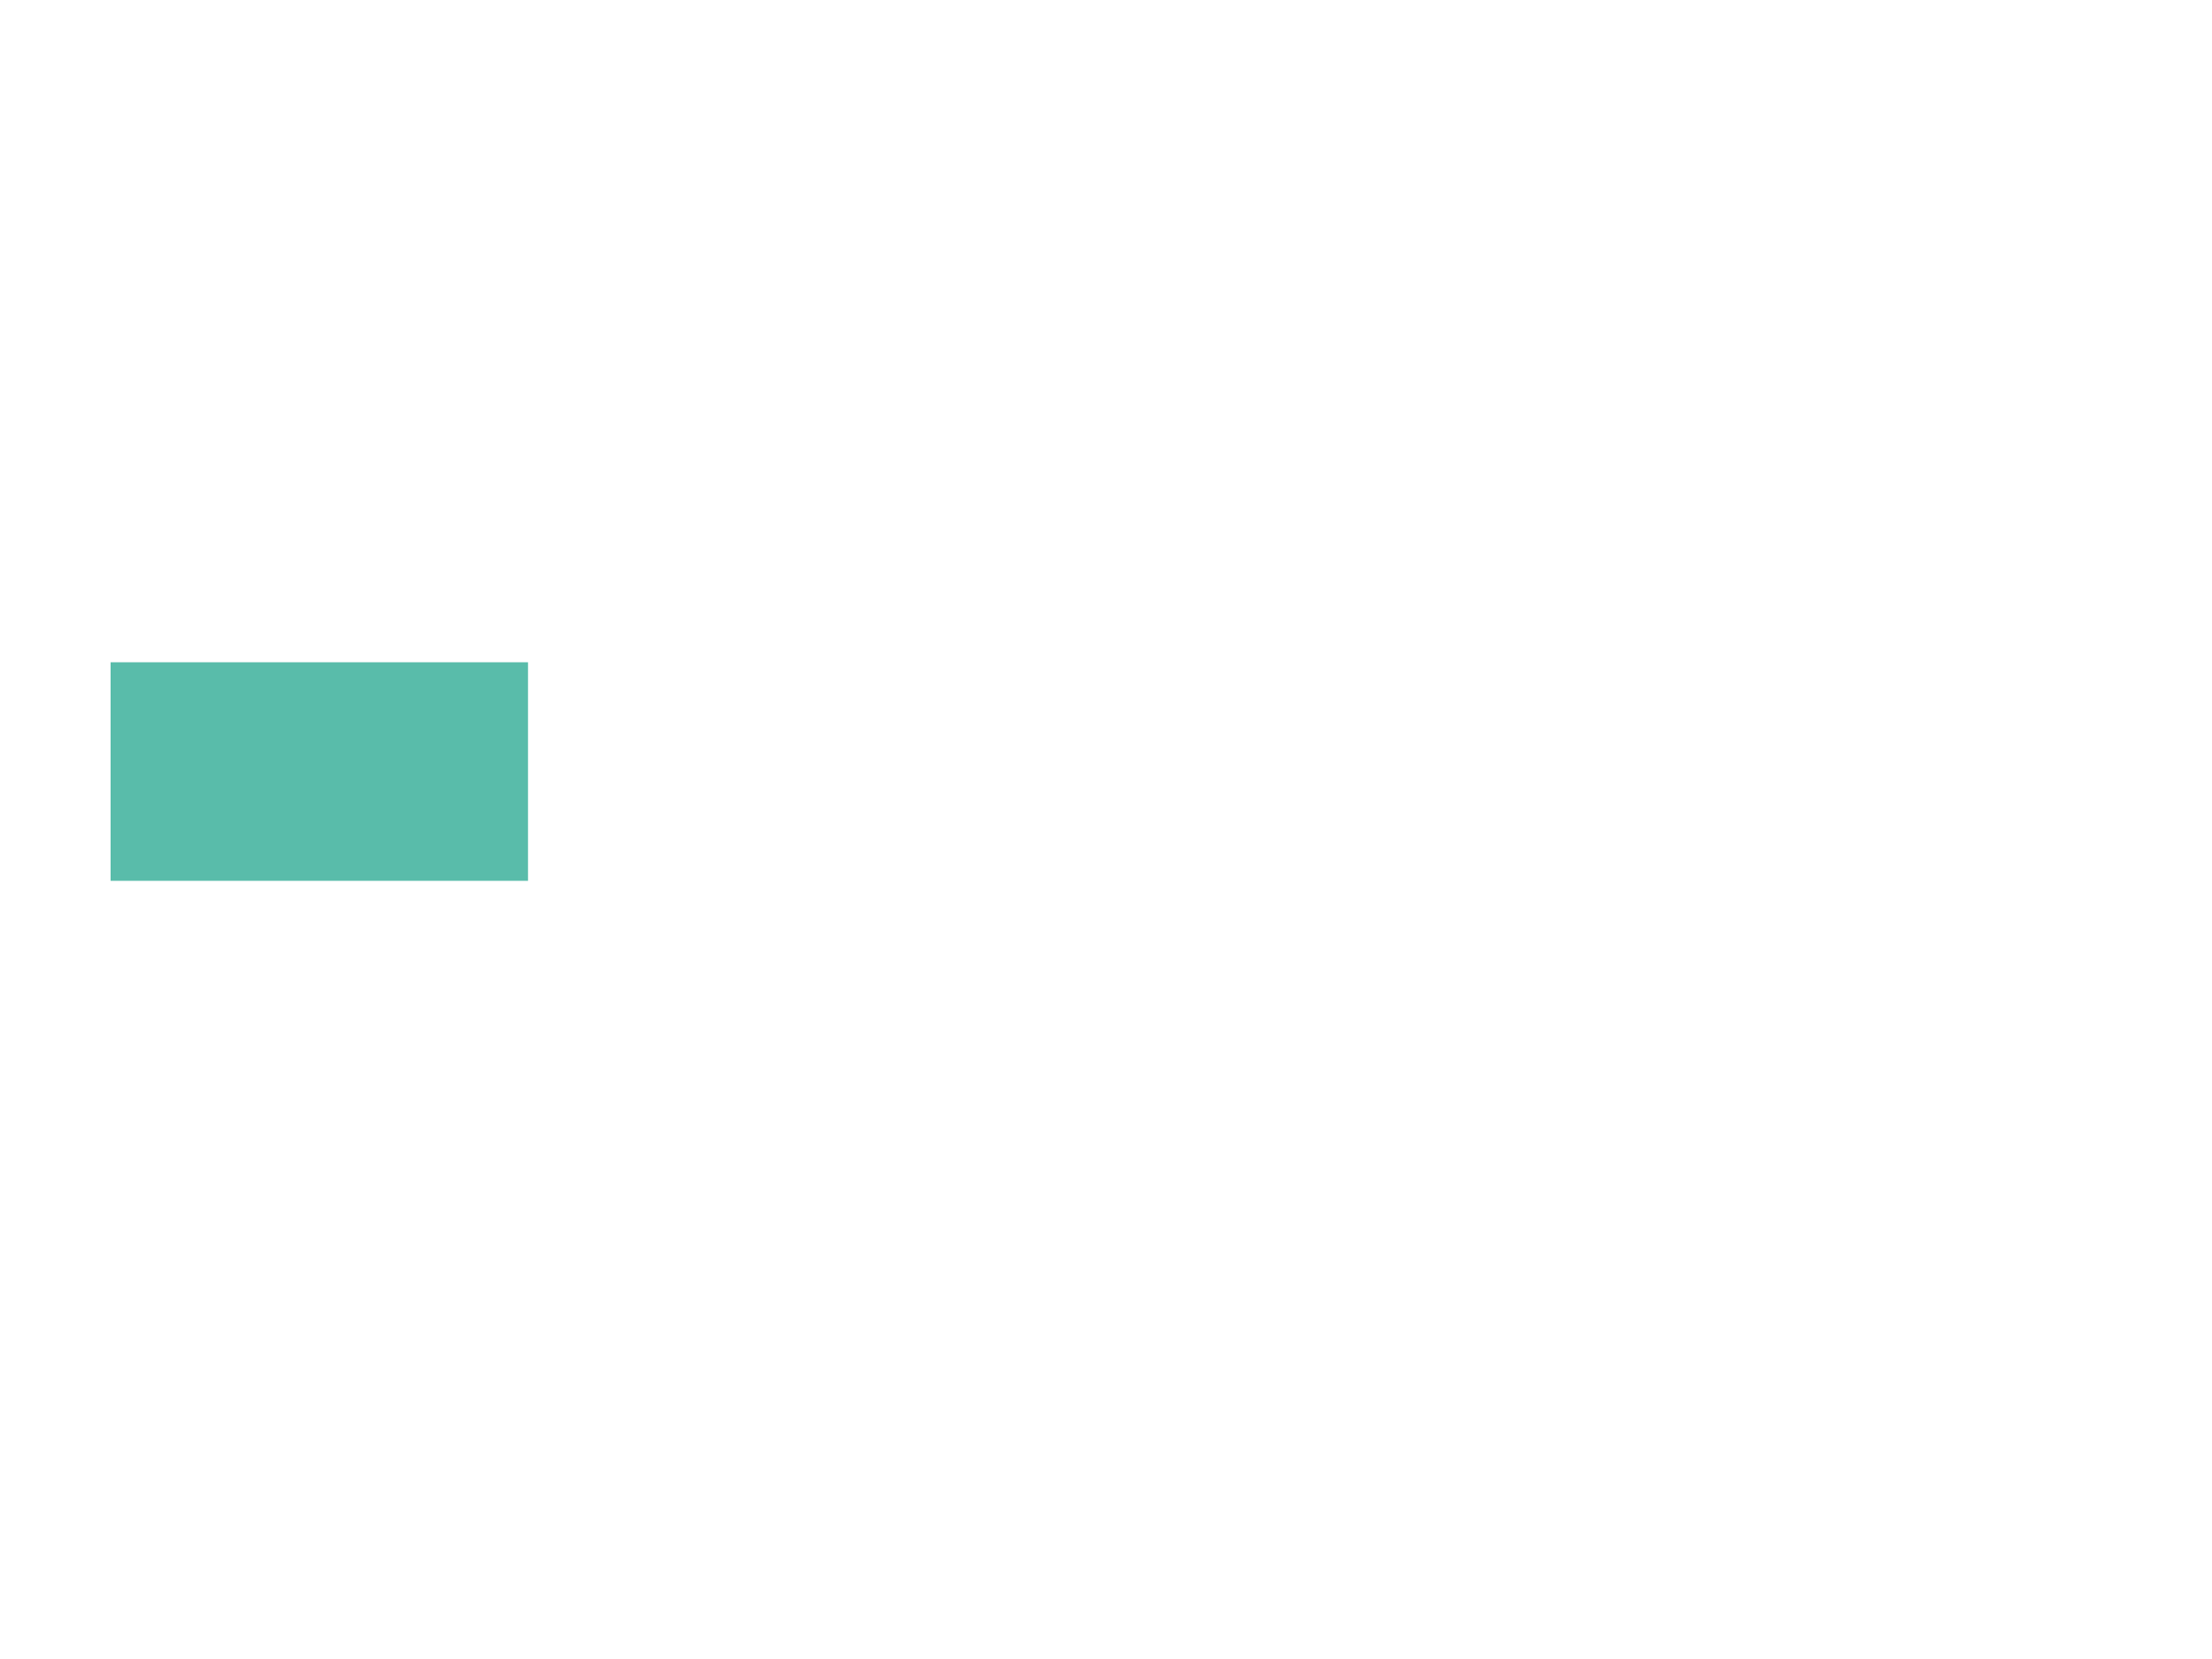 Landenberg